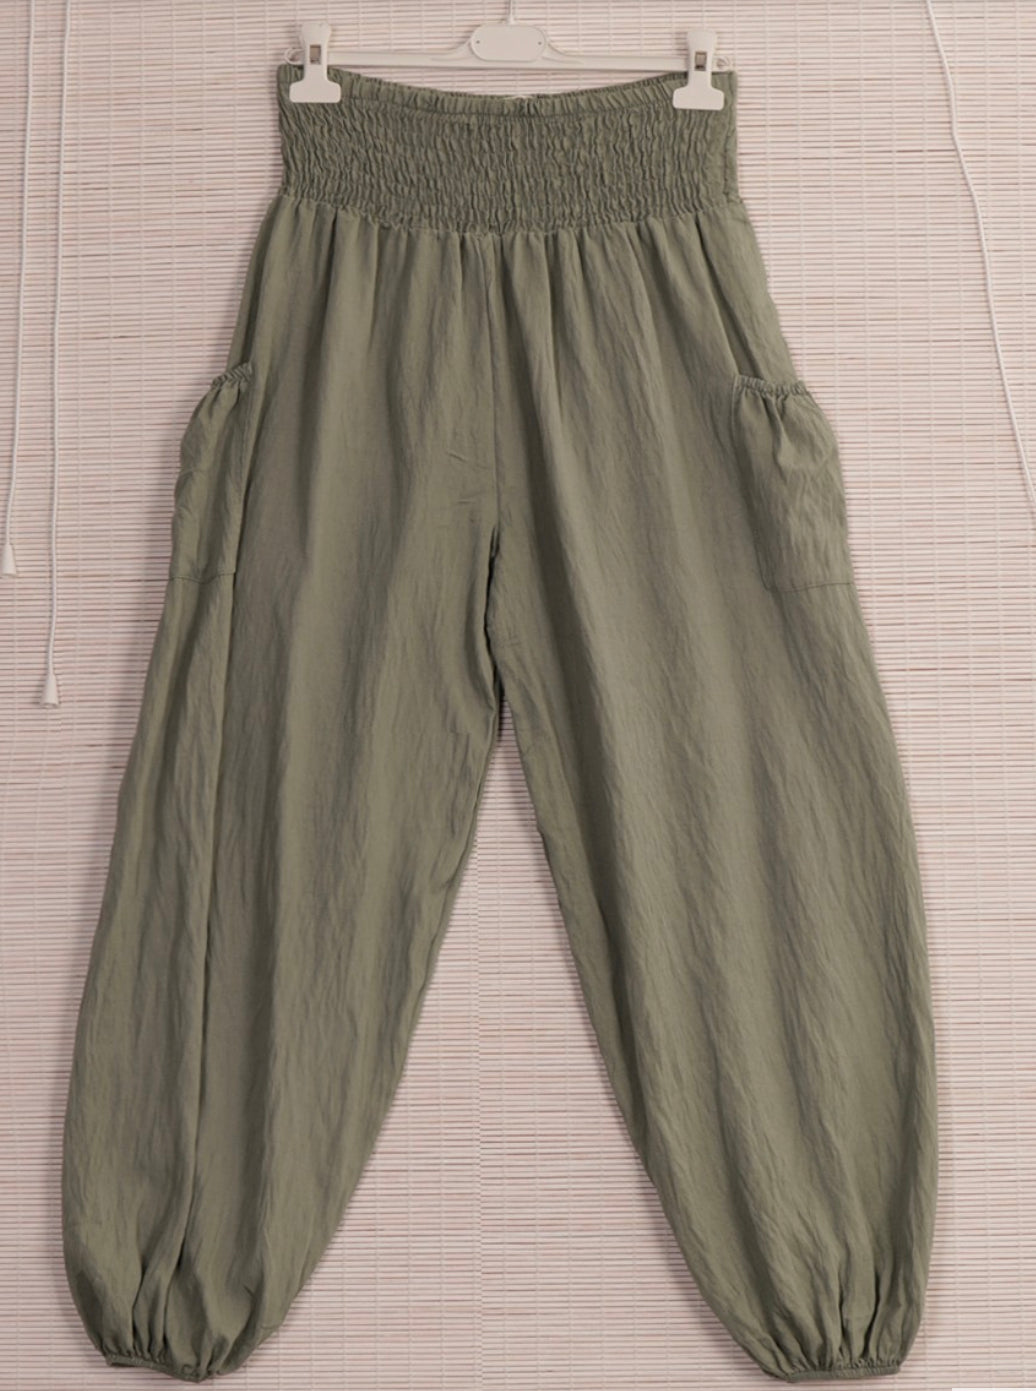 Harem pants with side pocket